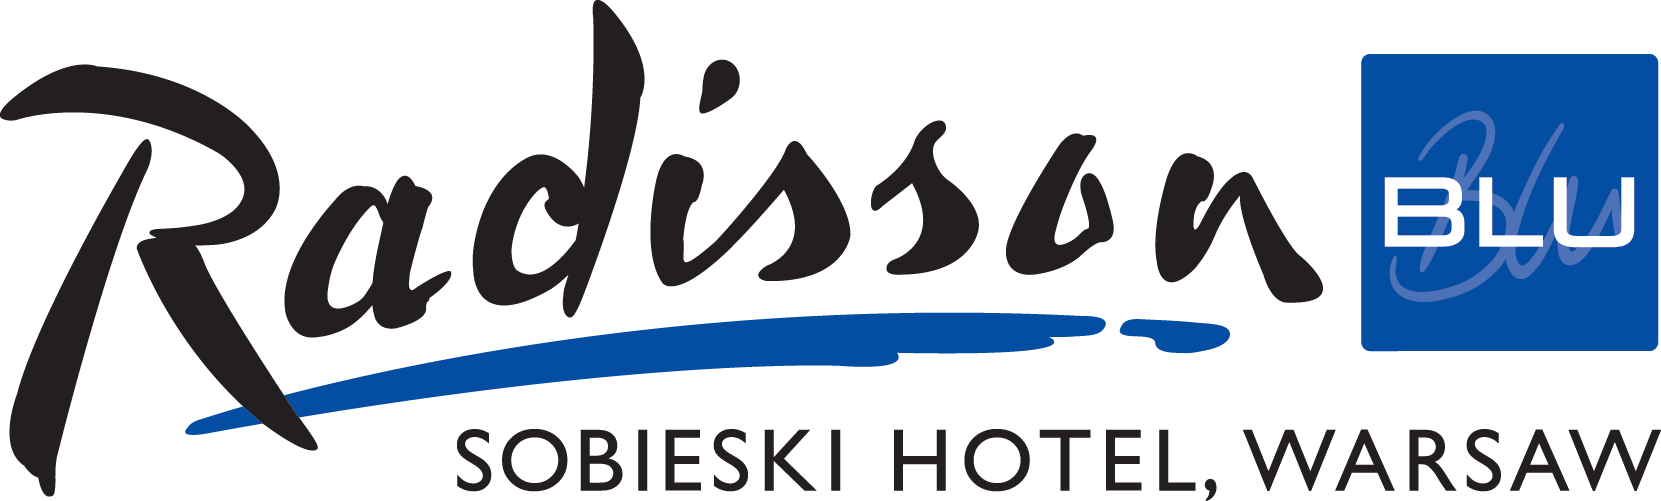 Radisson Blu Sobieski Hotel | Warszawska Organizacja Turystyczna